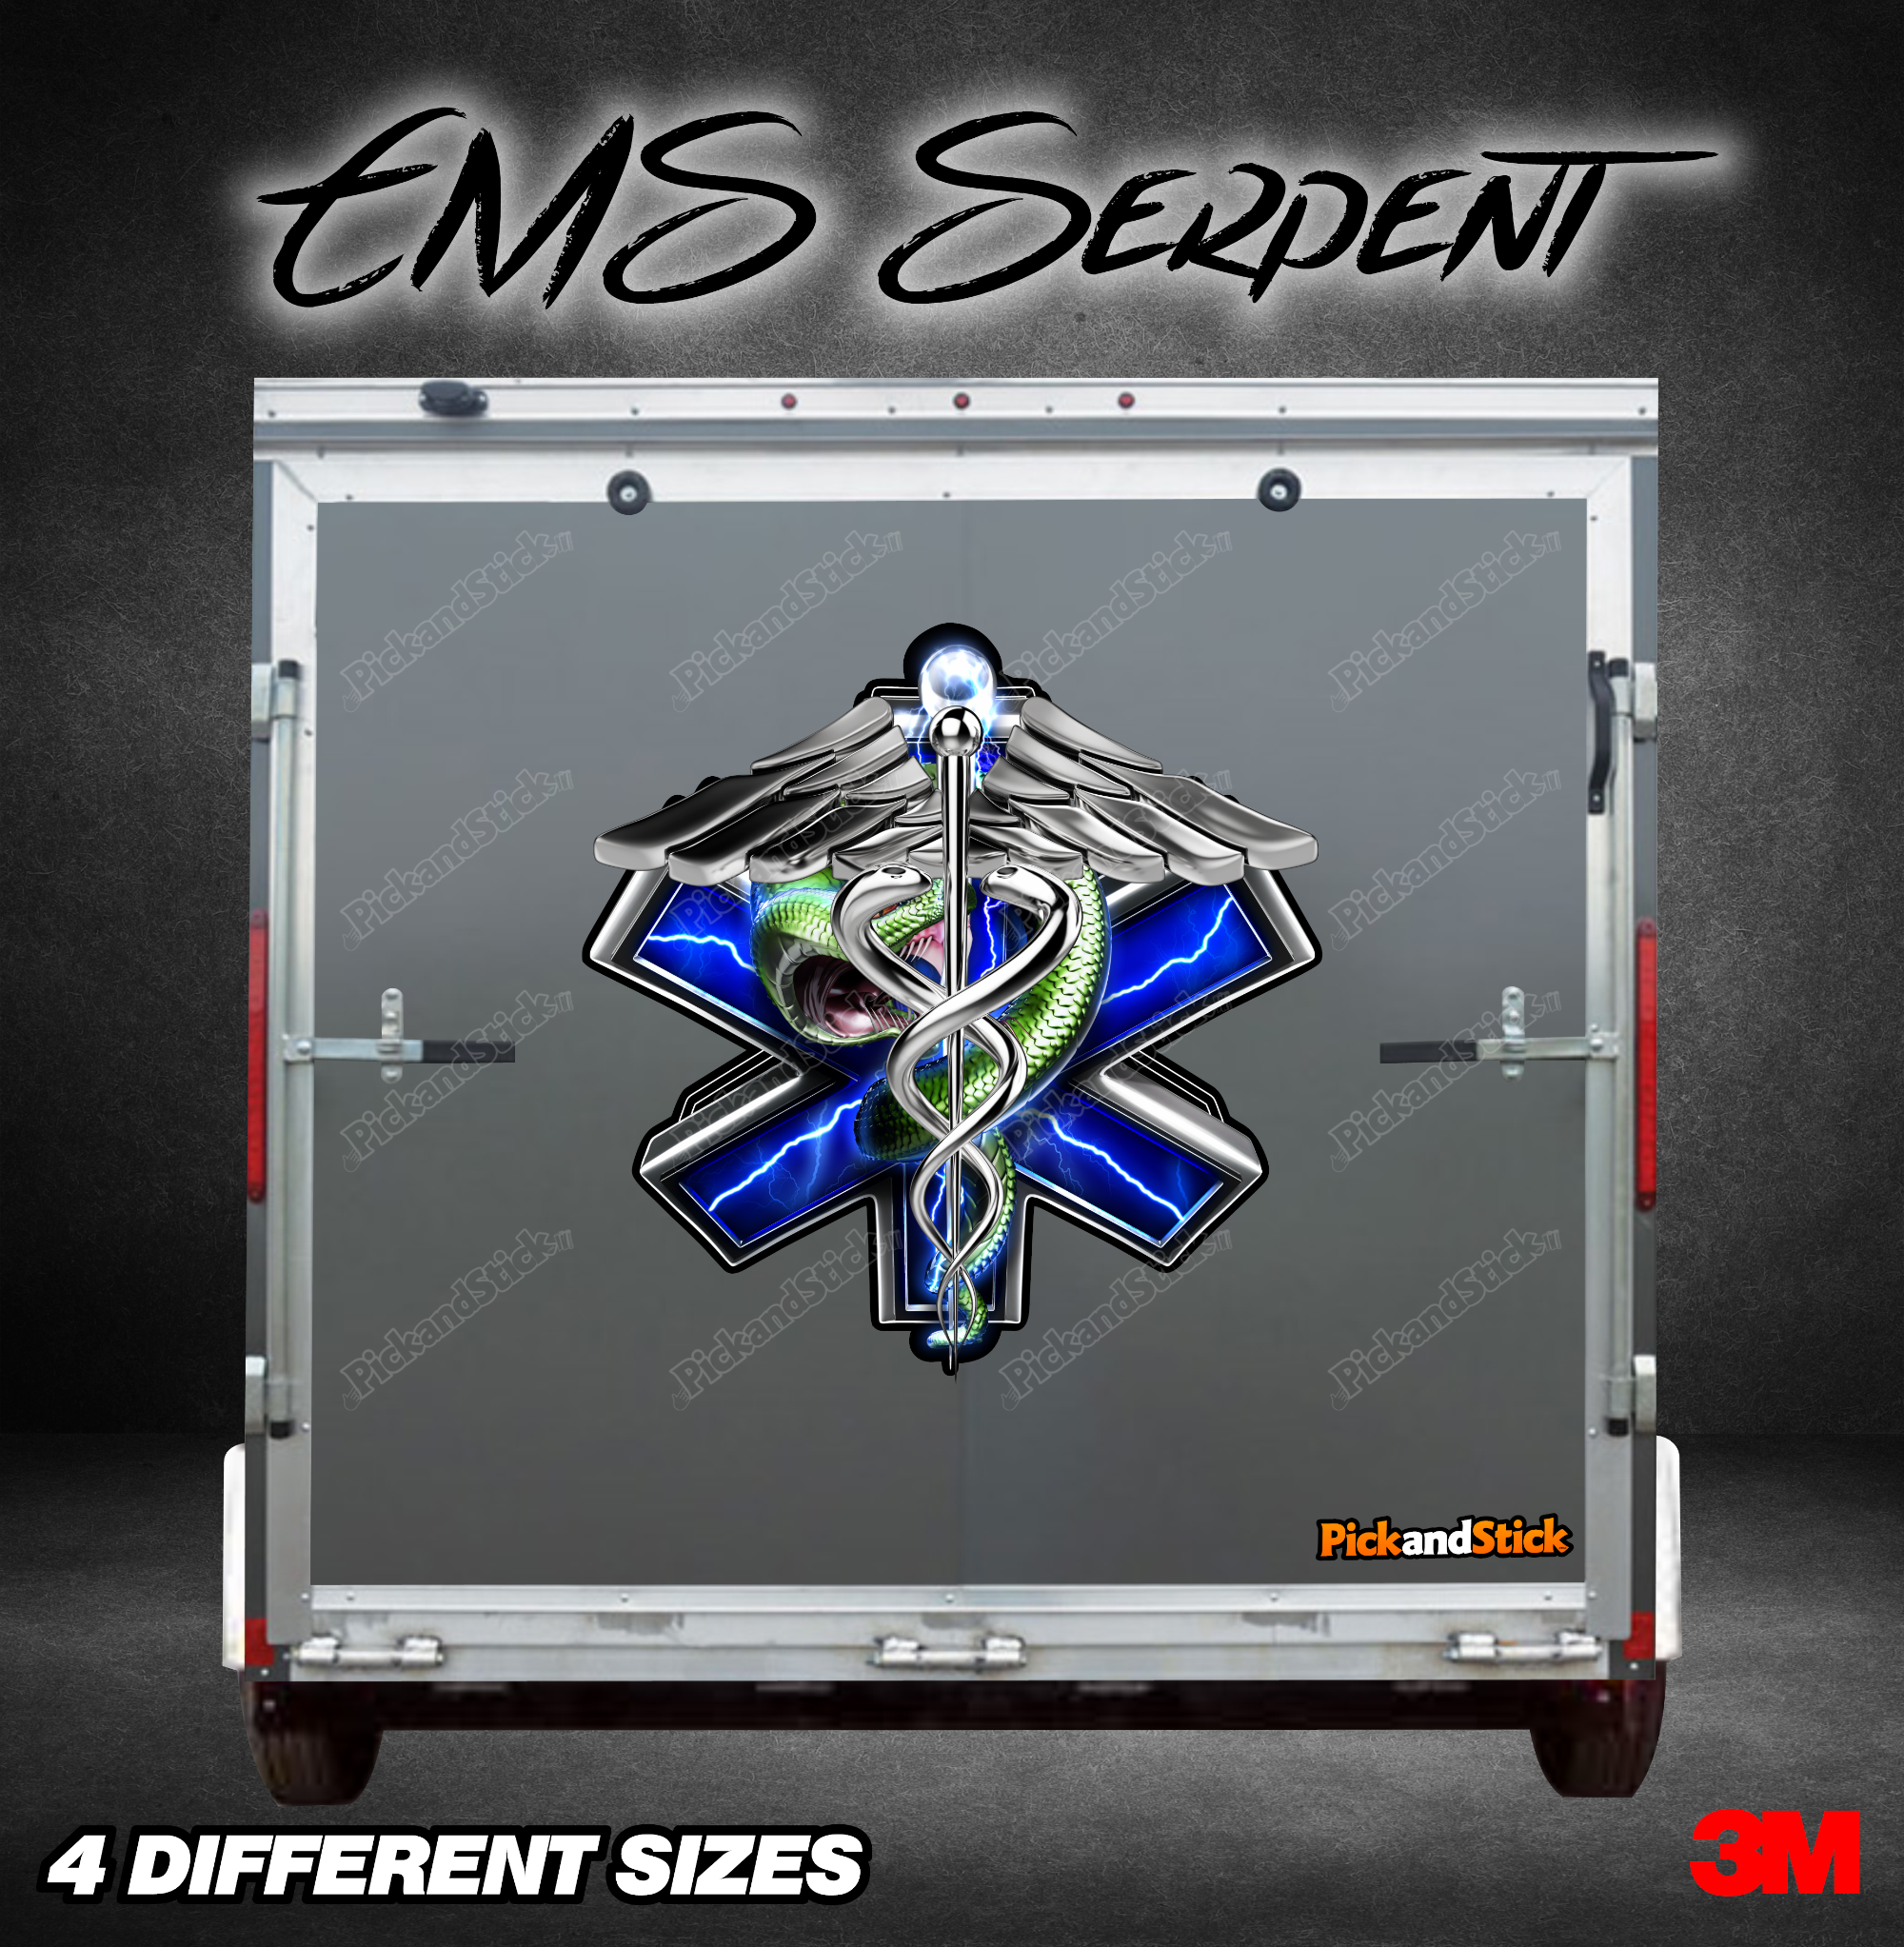 EMS Serpent Trailer Graphic - PickandStickcom